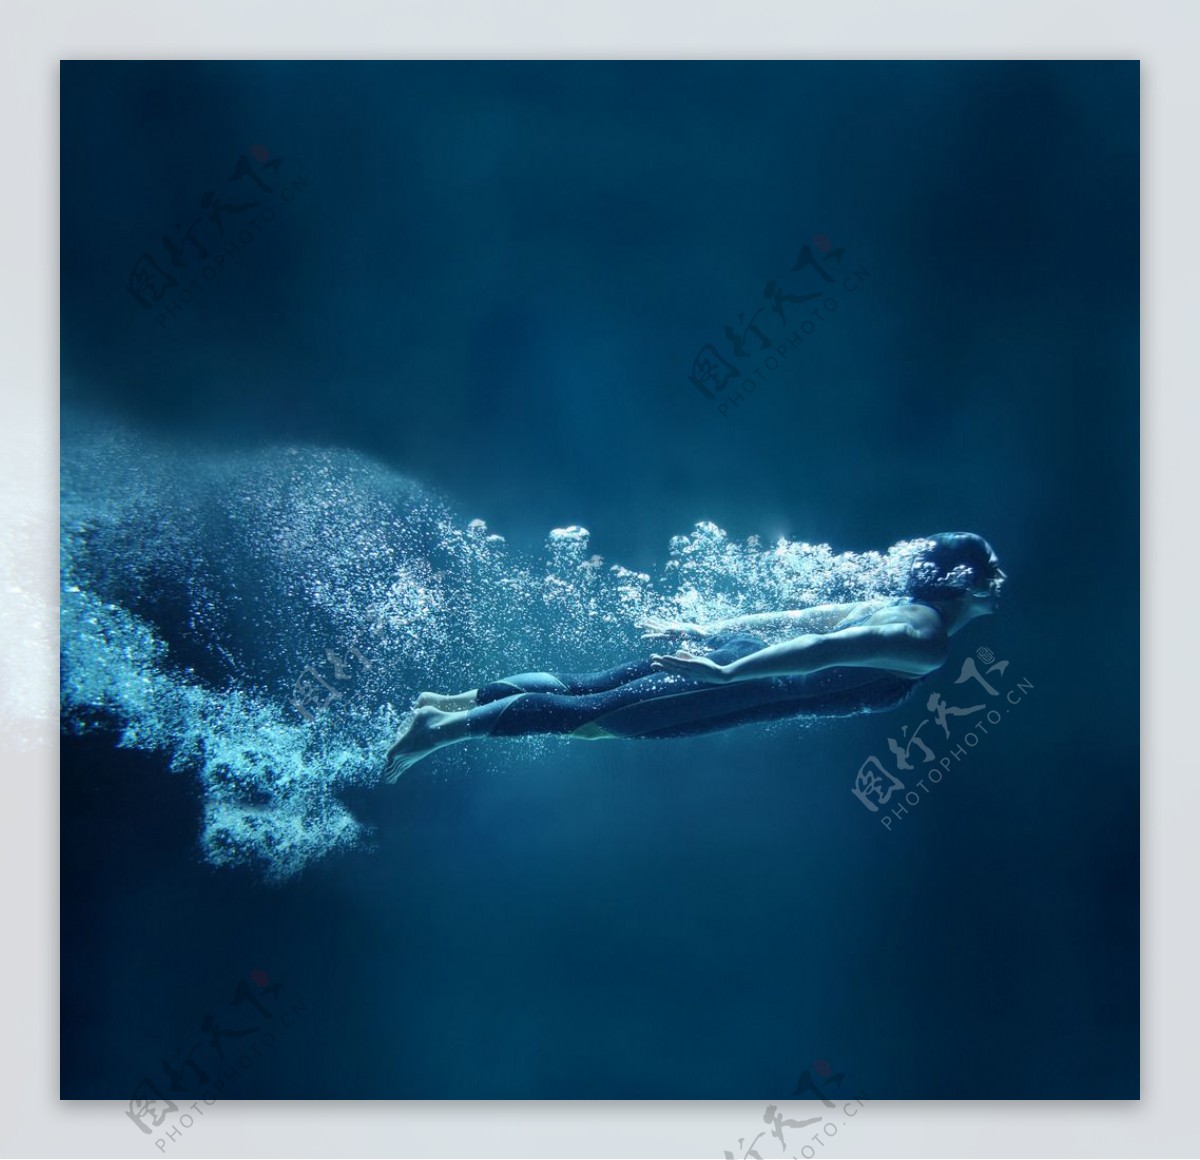 游泳运动员图片